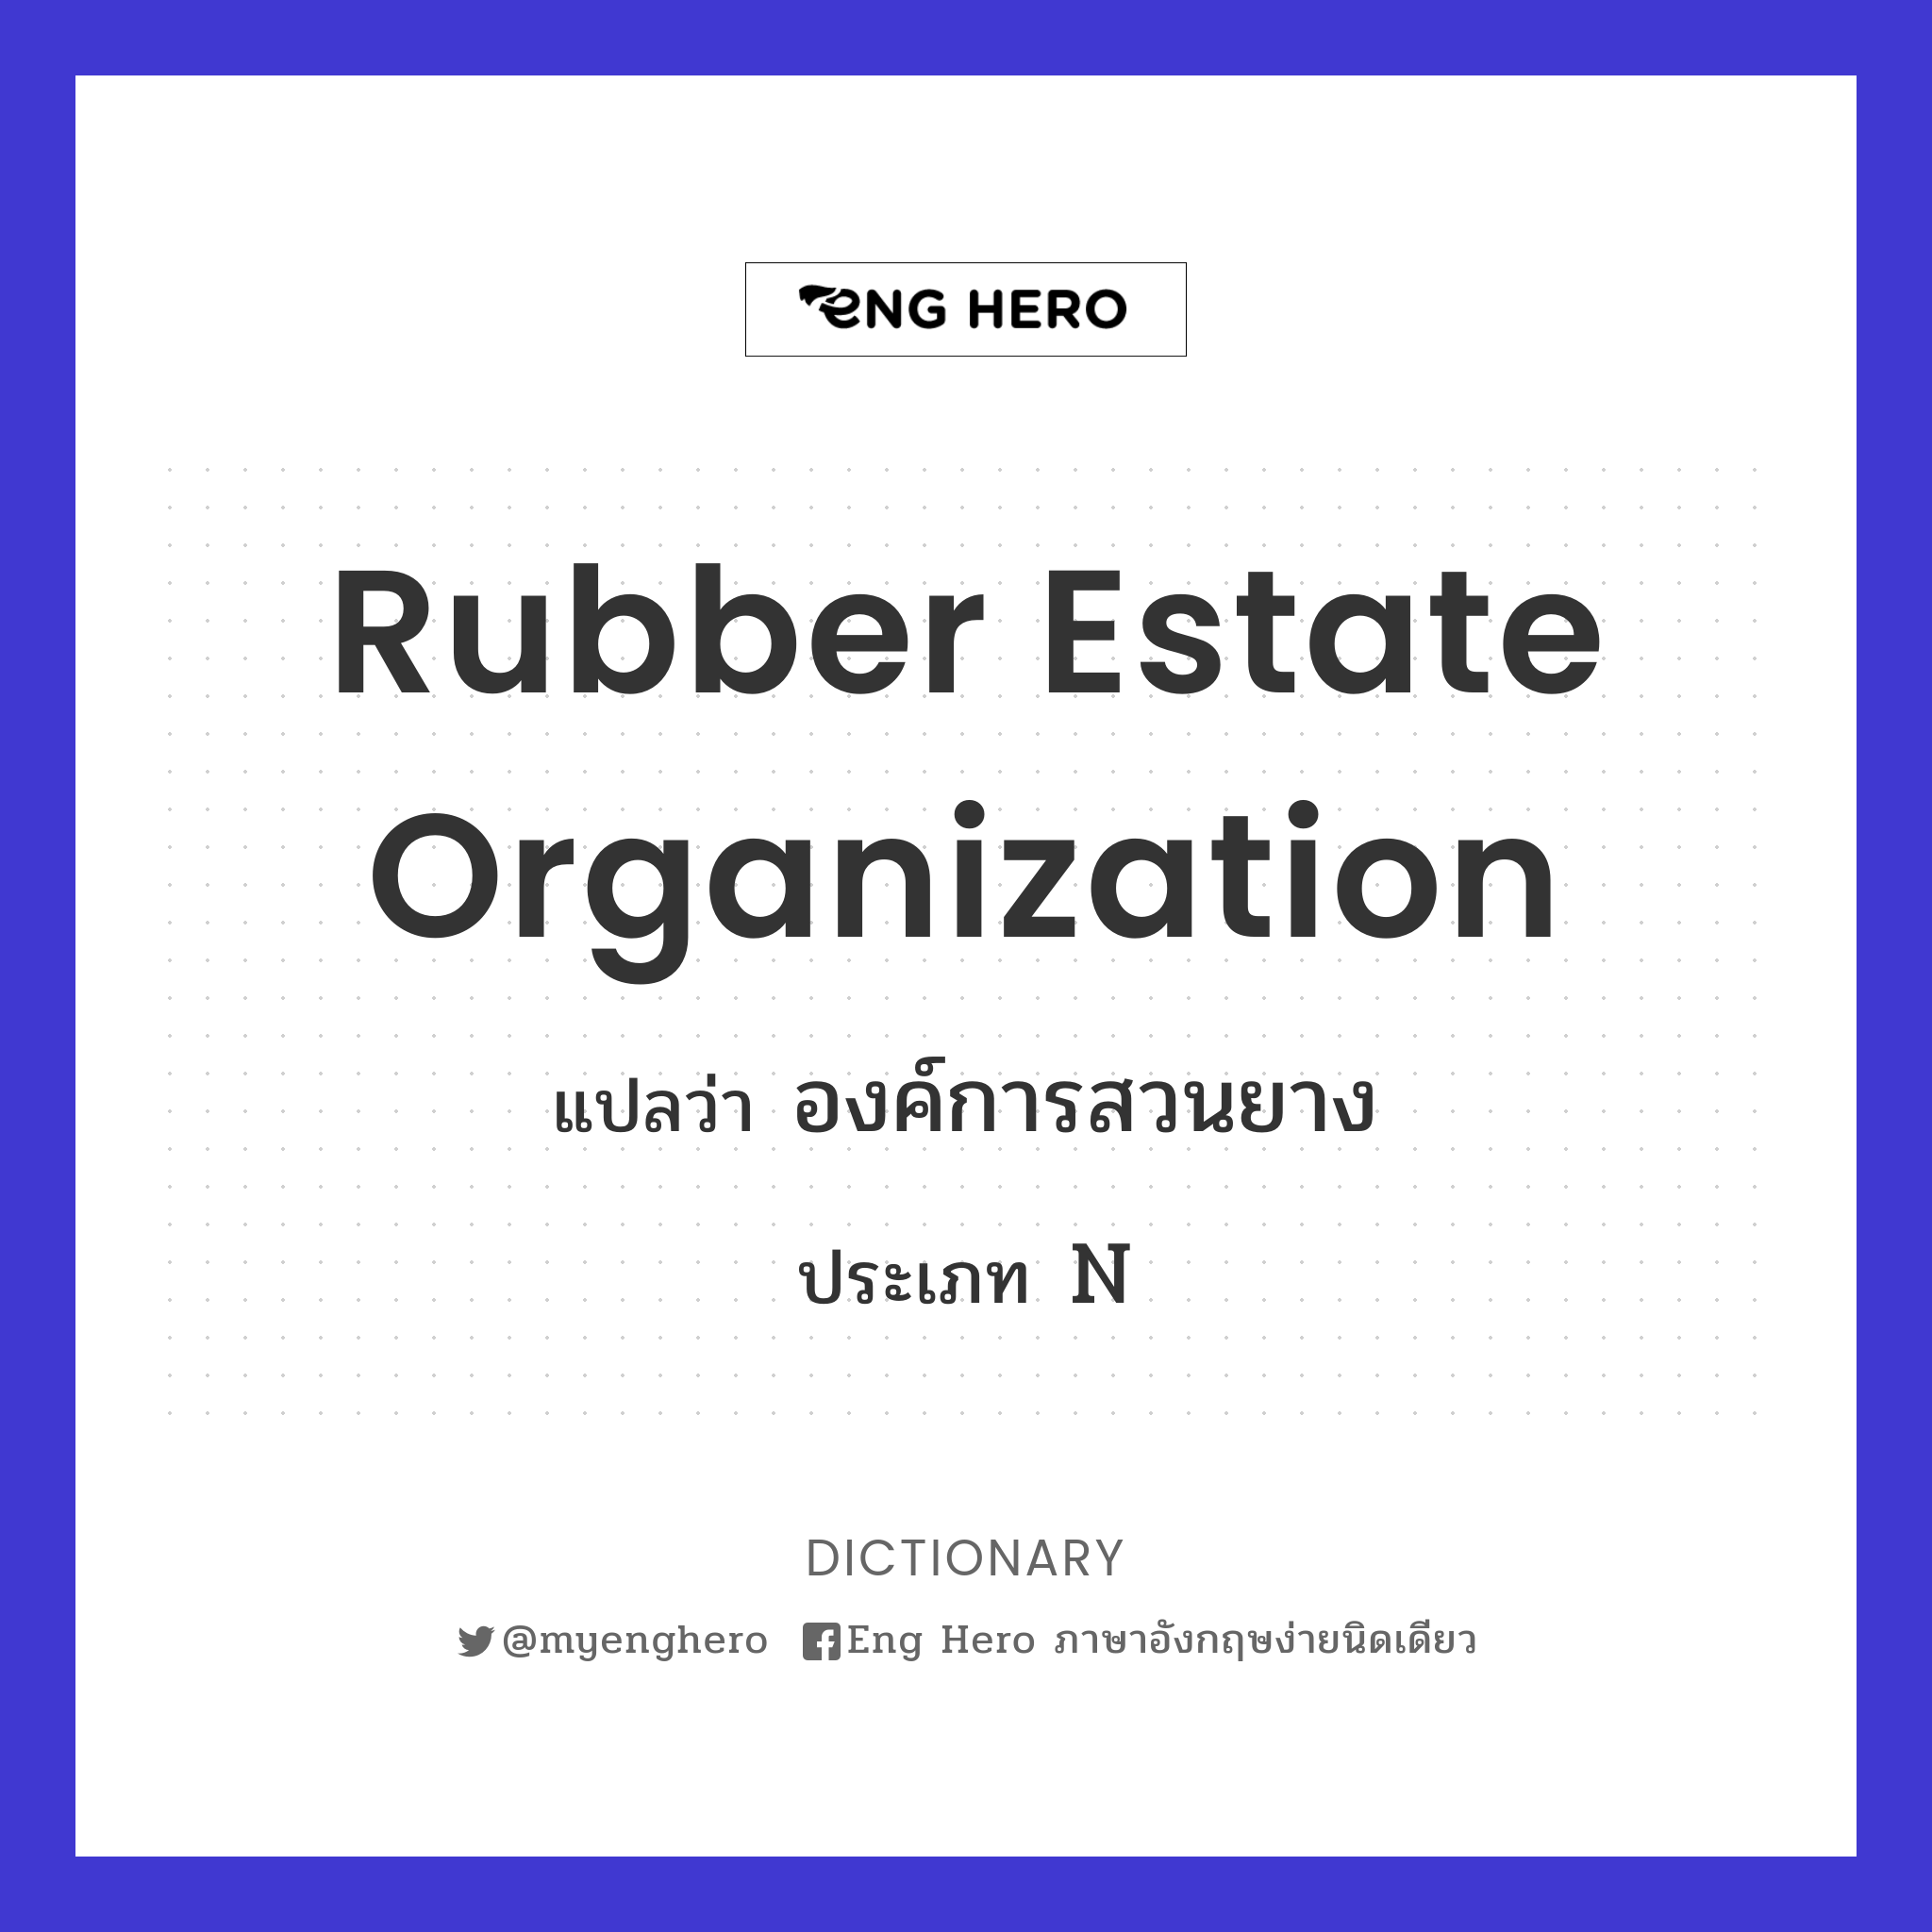 Rubber Estate Organization